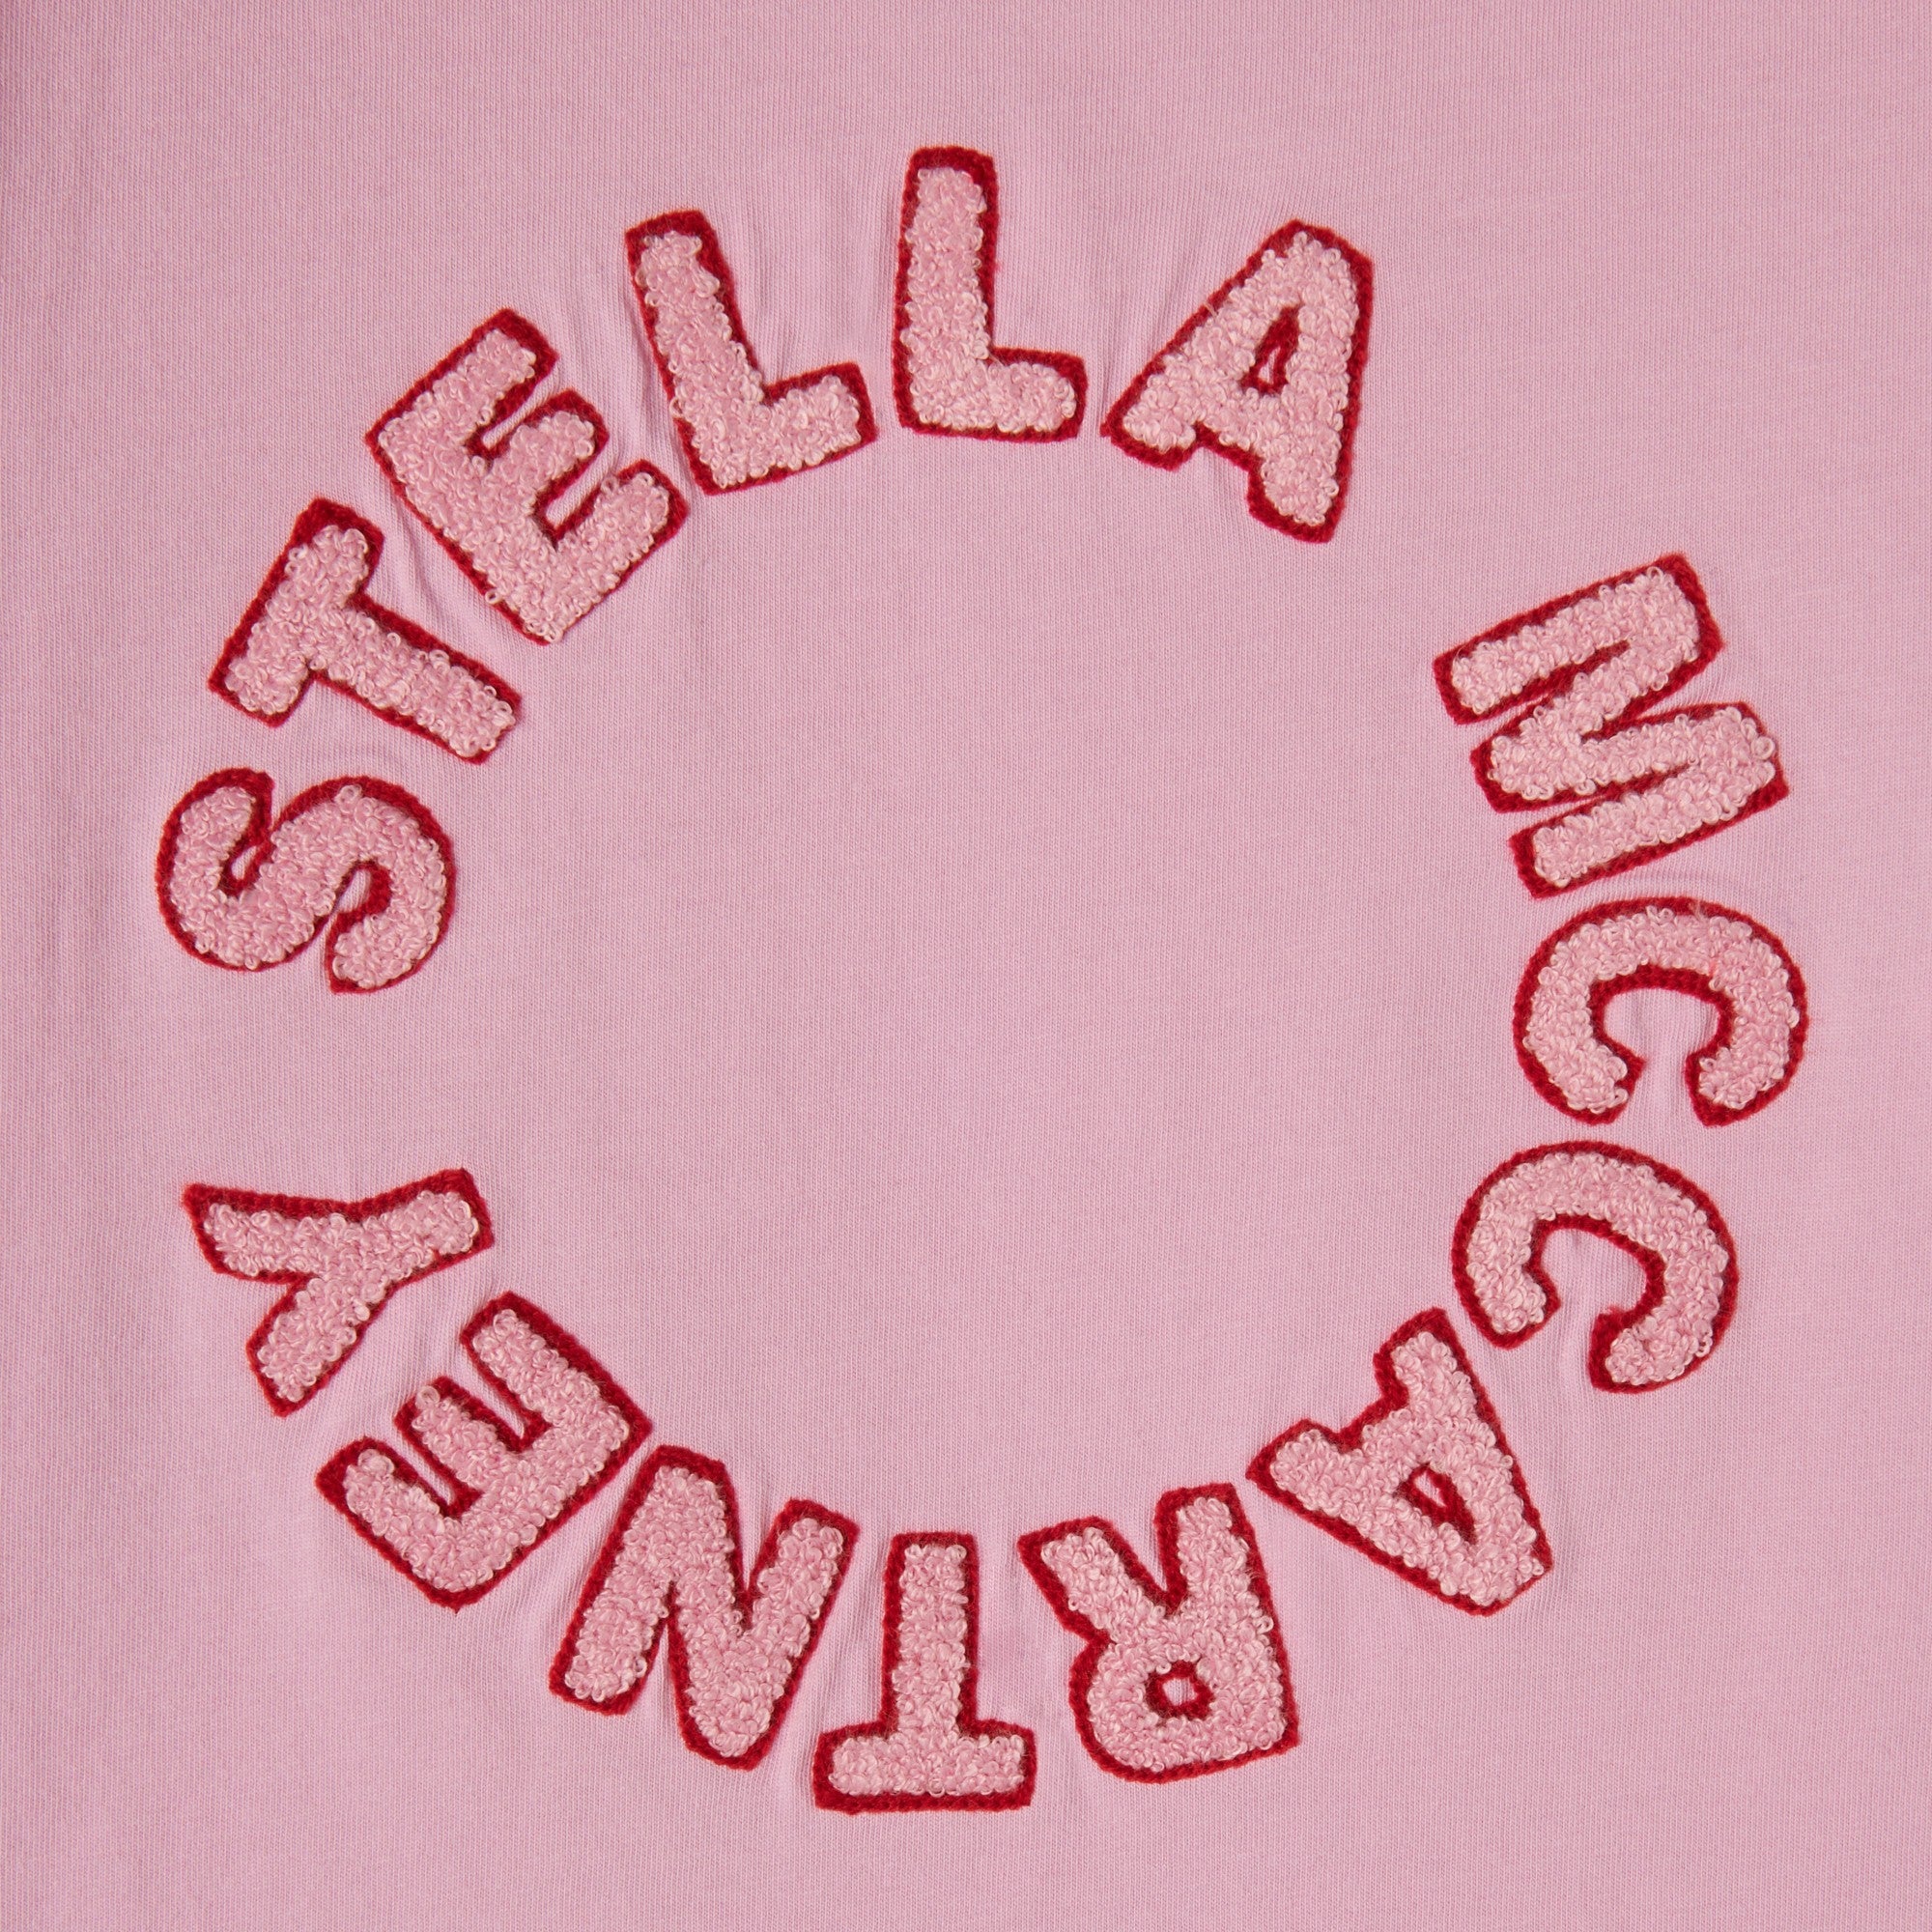 Girls Pink Logo Cotton T-Shirt